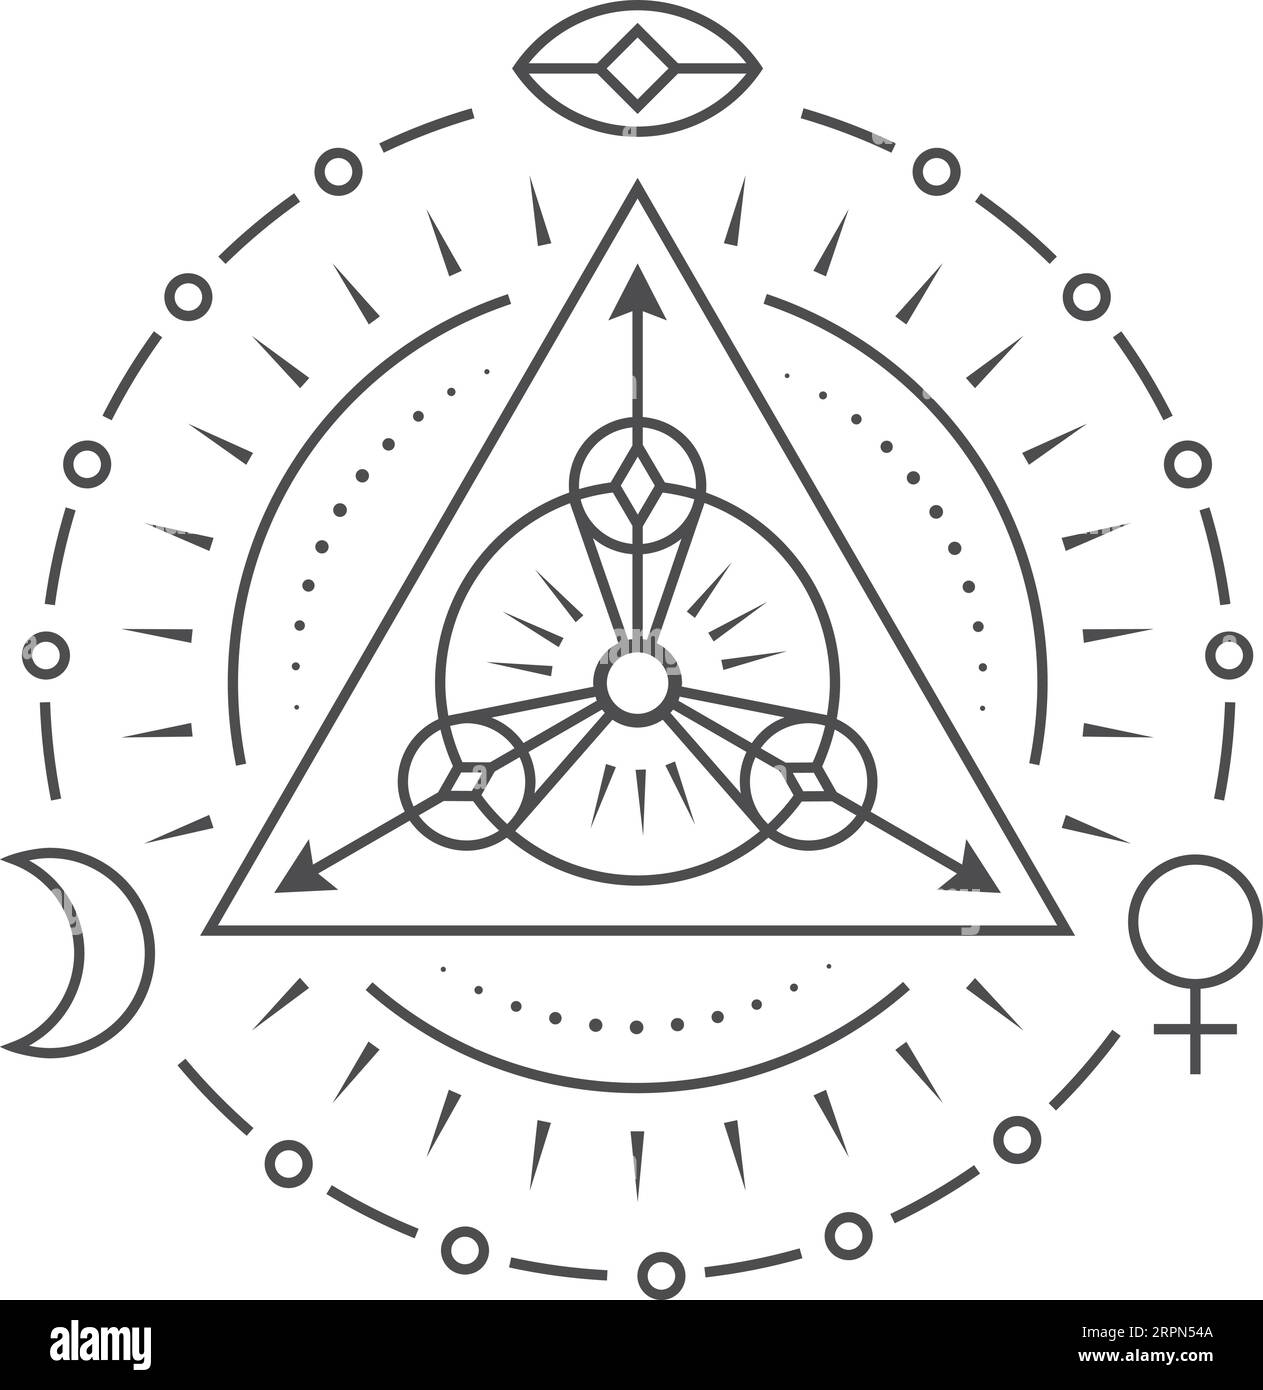 Sacred geometry symbol. Dark magic ritual element Stock Vector